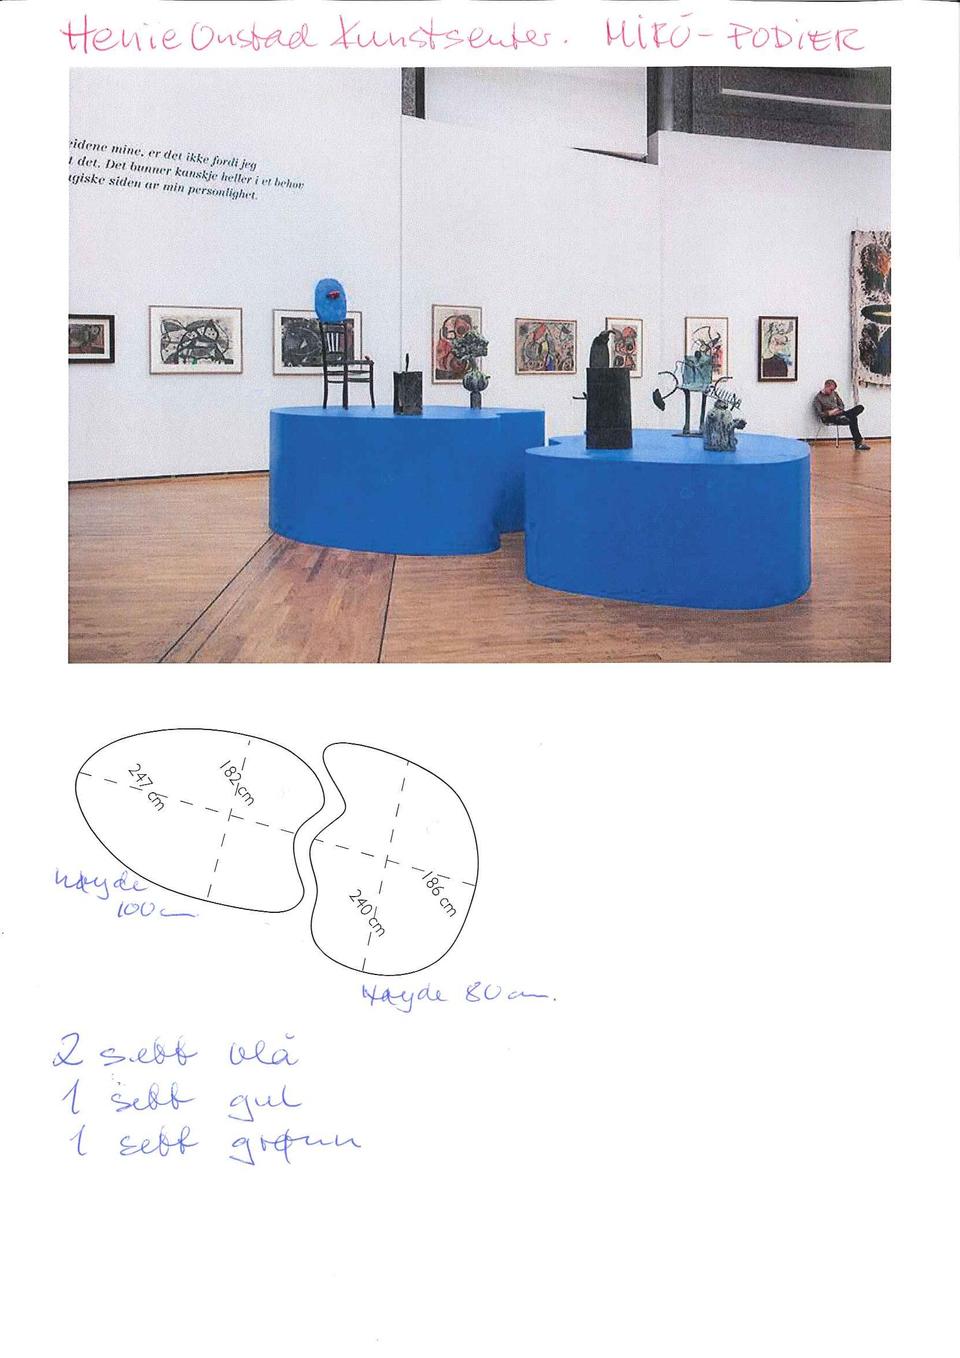 Podier fra Miró-utstillingen ved Henie Onstad Kunstsenter, gis bort